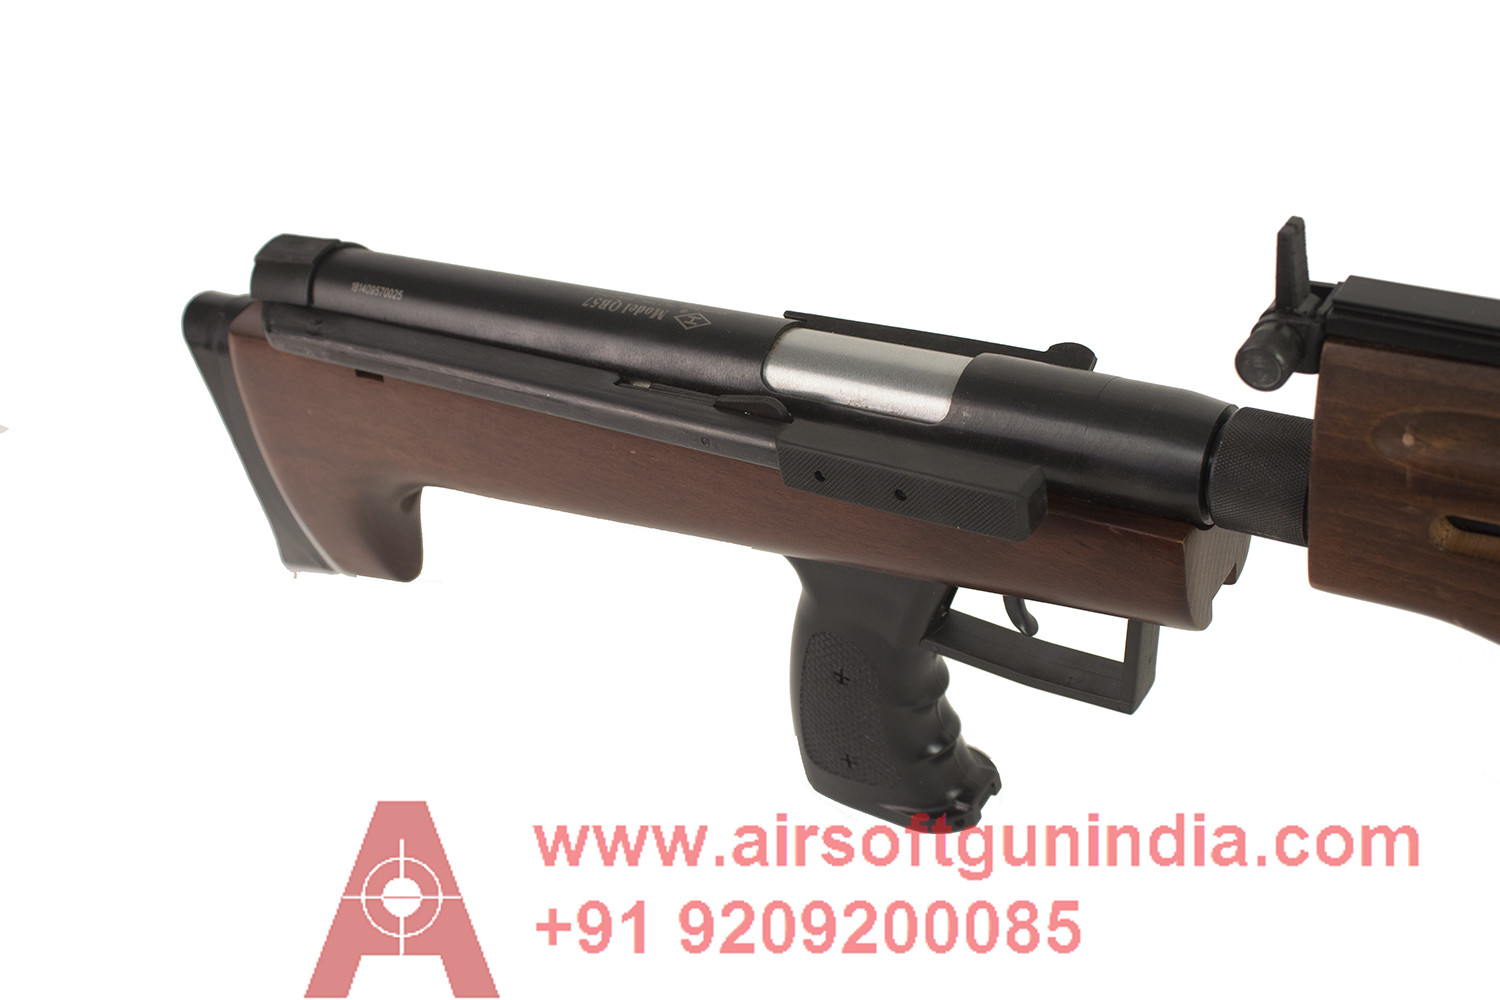 Industry Brand QB57 Air Rifle By Airsoft Gun India